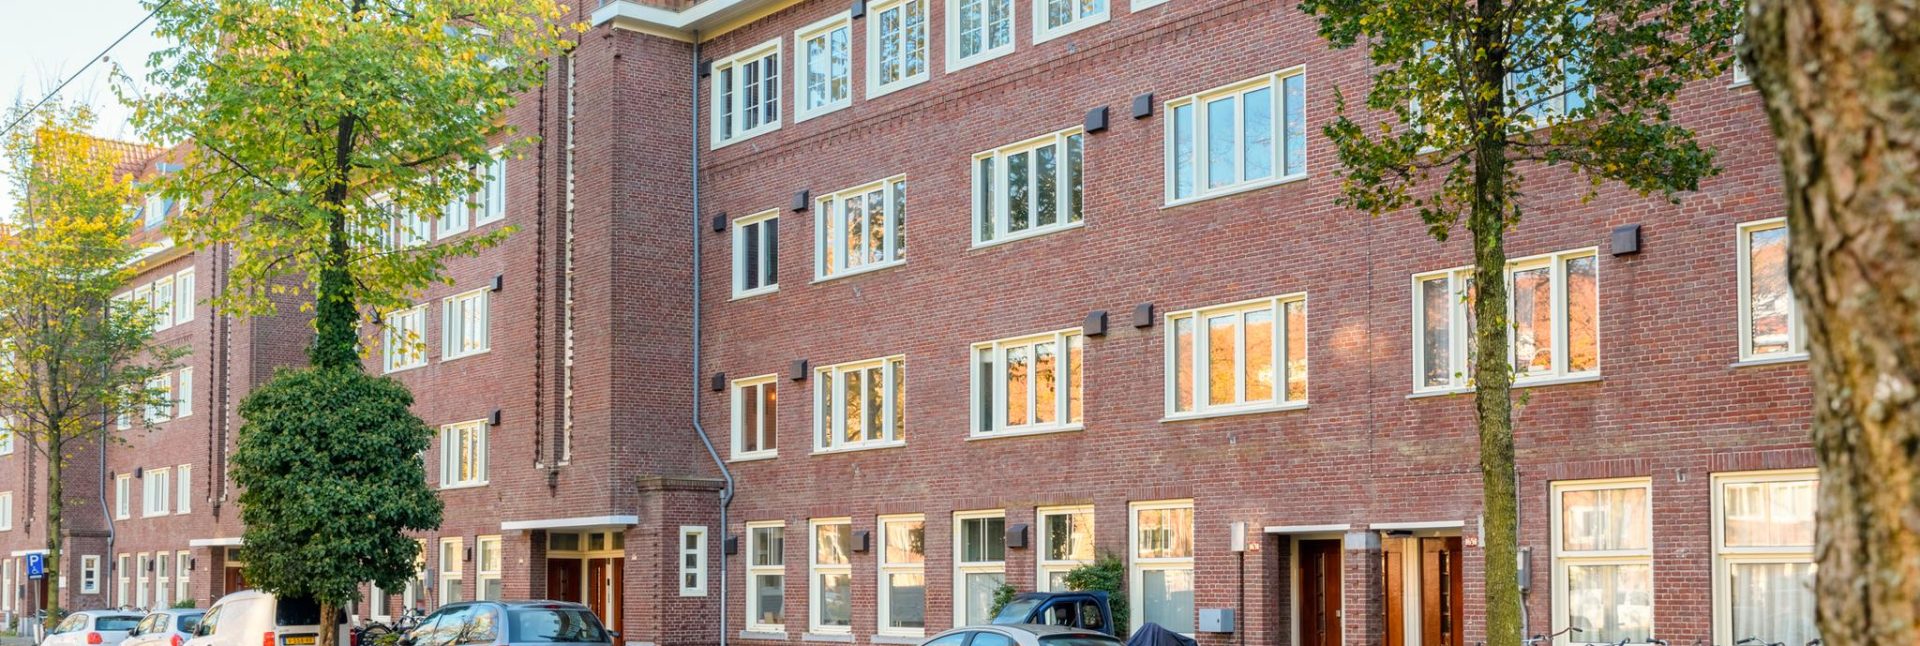 Appartement Amsterdam Zuid 3 kamers met balkon Churchilllaan Eefje Voogd makelaardij